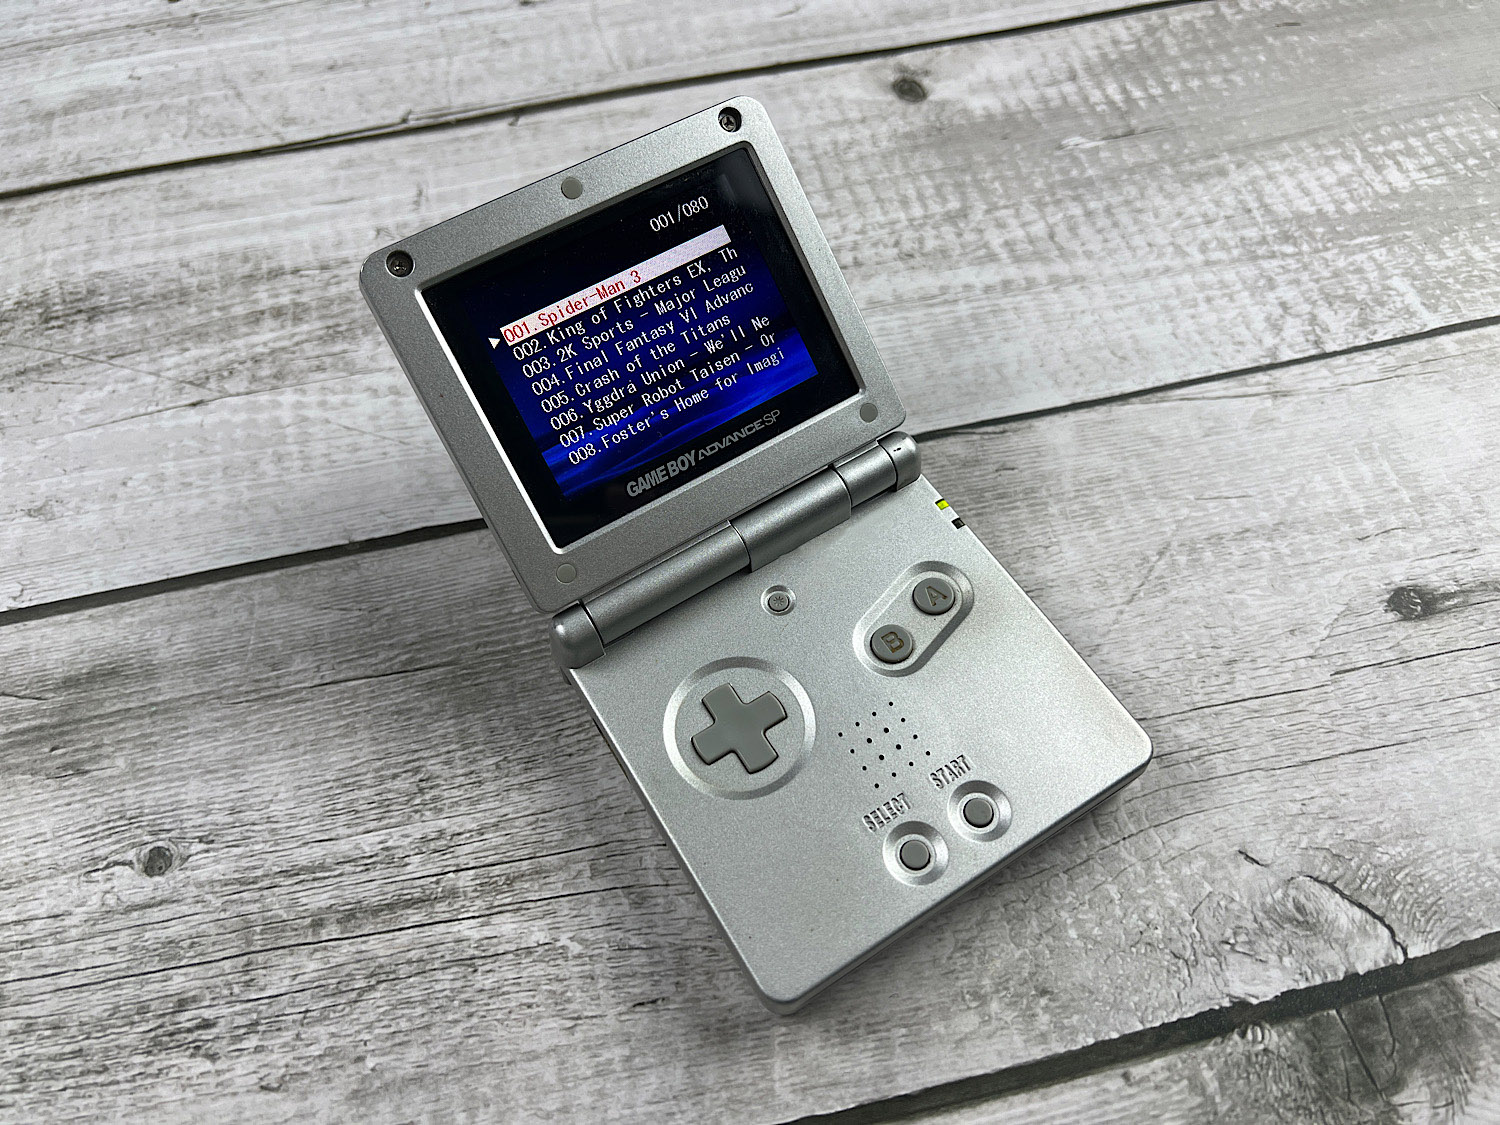 Поддельный Game Boy Advance SP встроенные игры